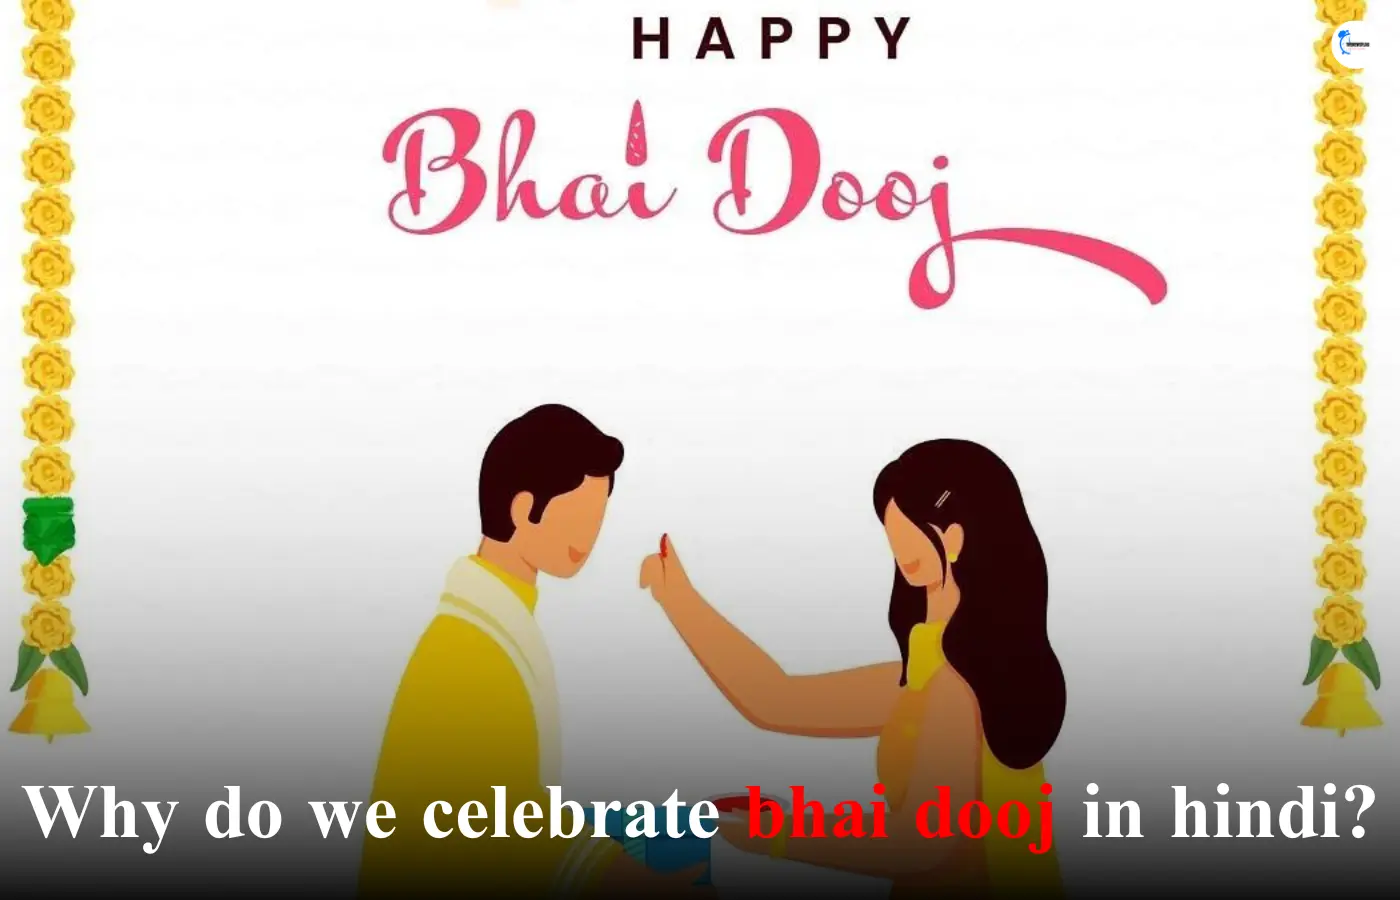 Why do we celebrate bhai dooj in hindi?